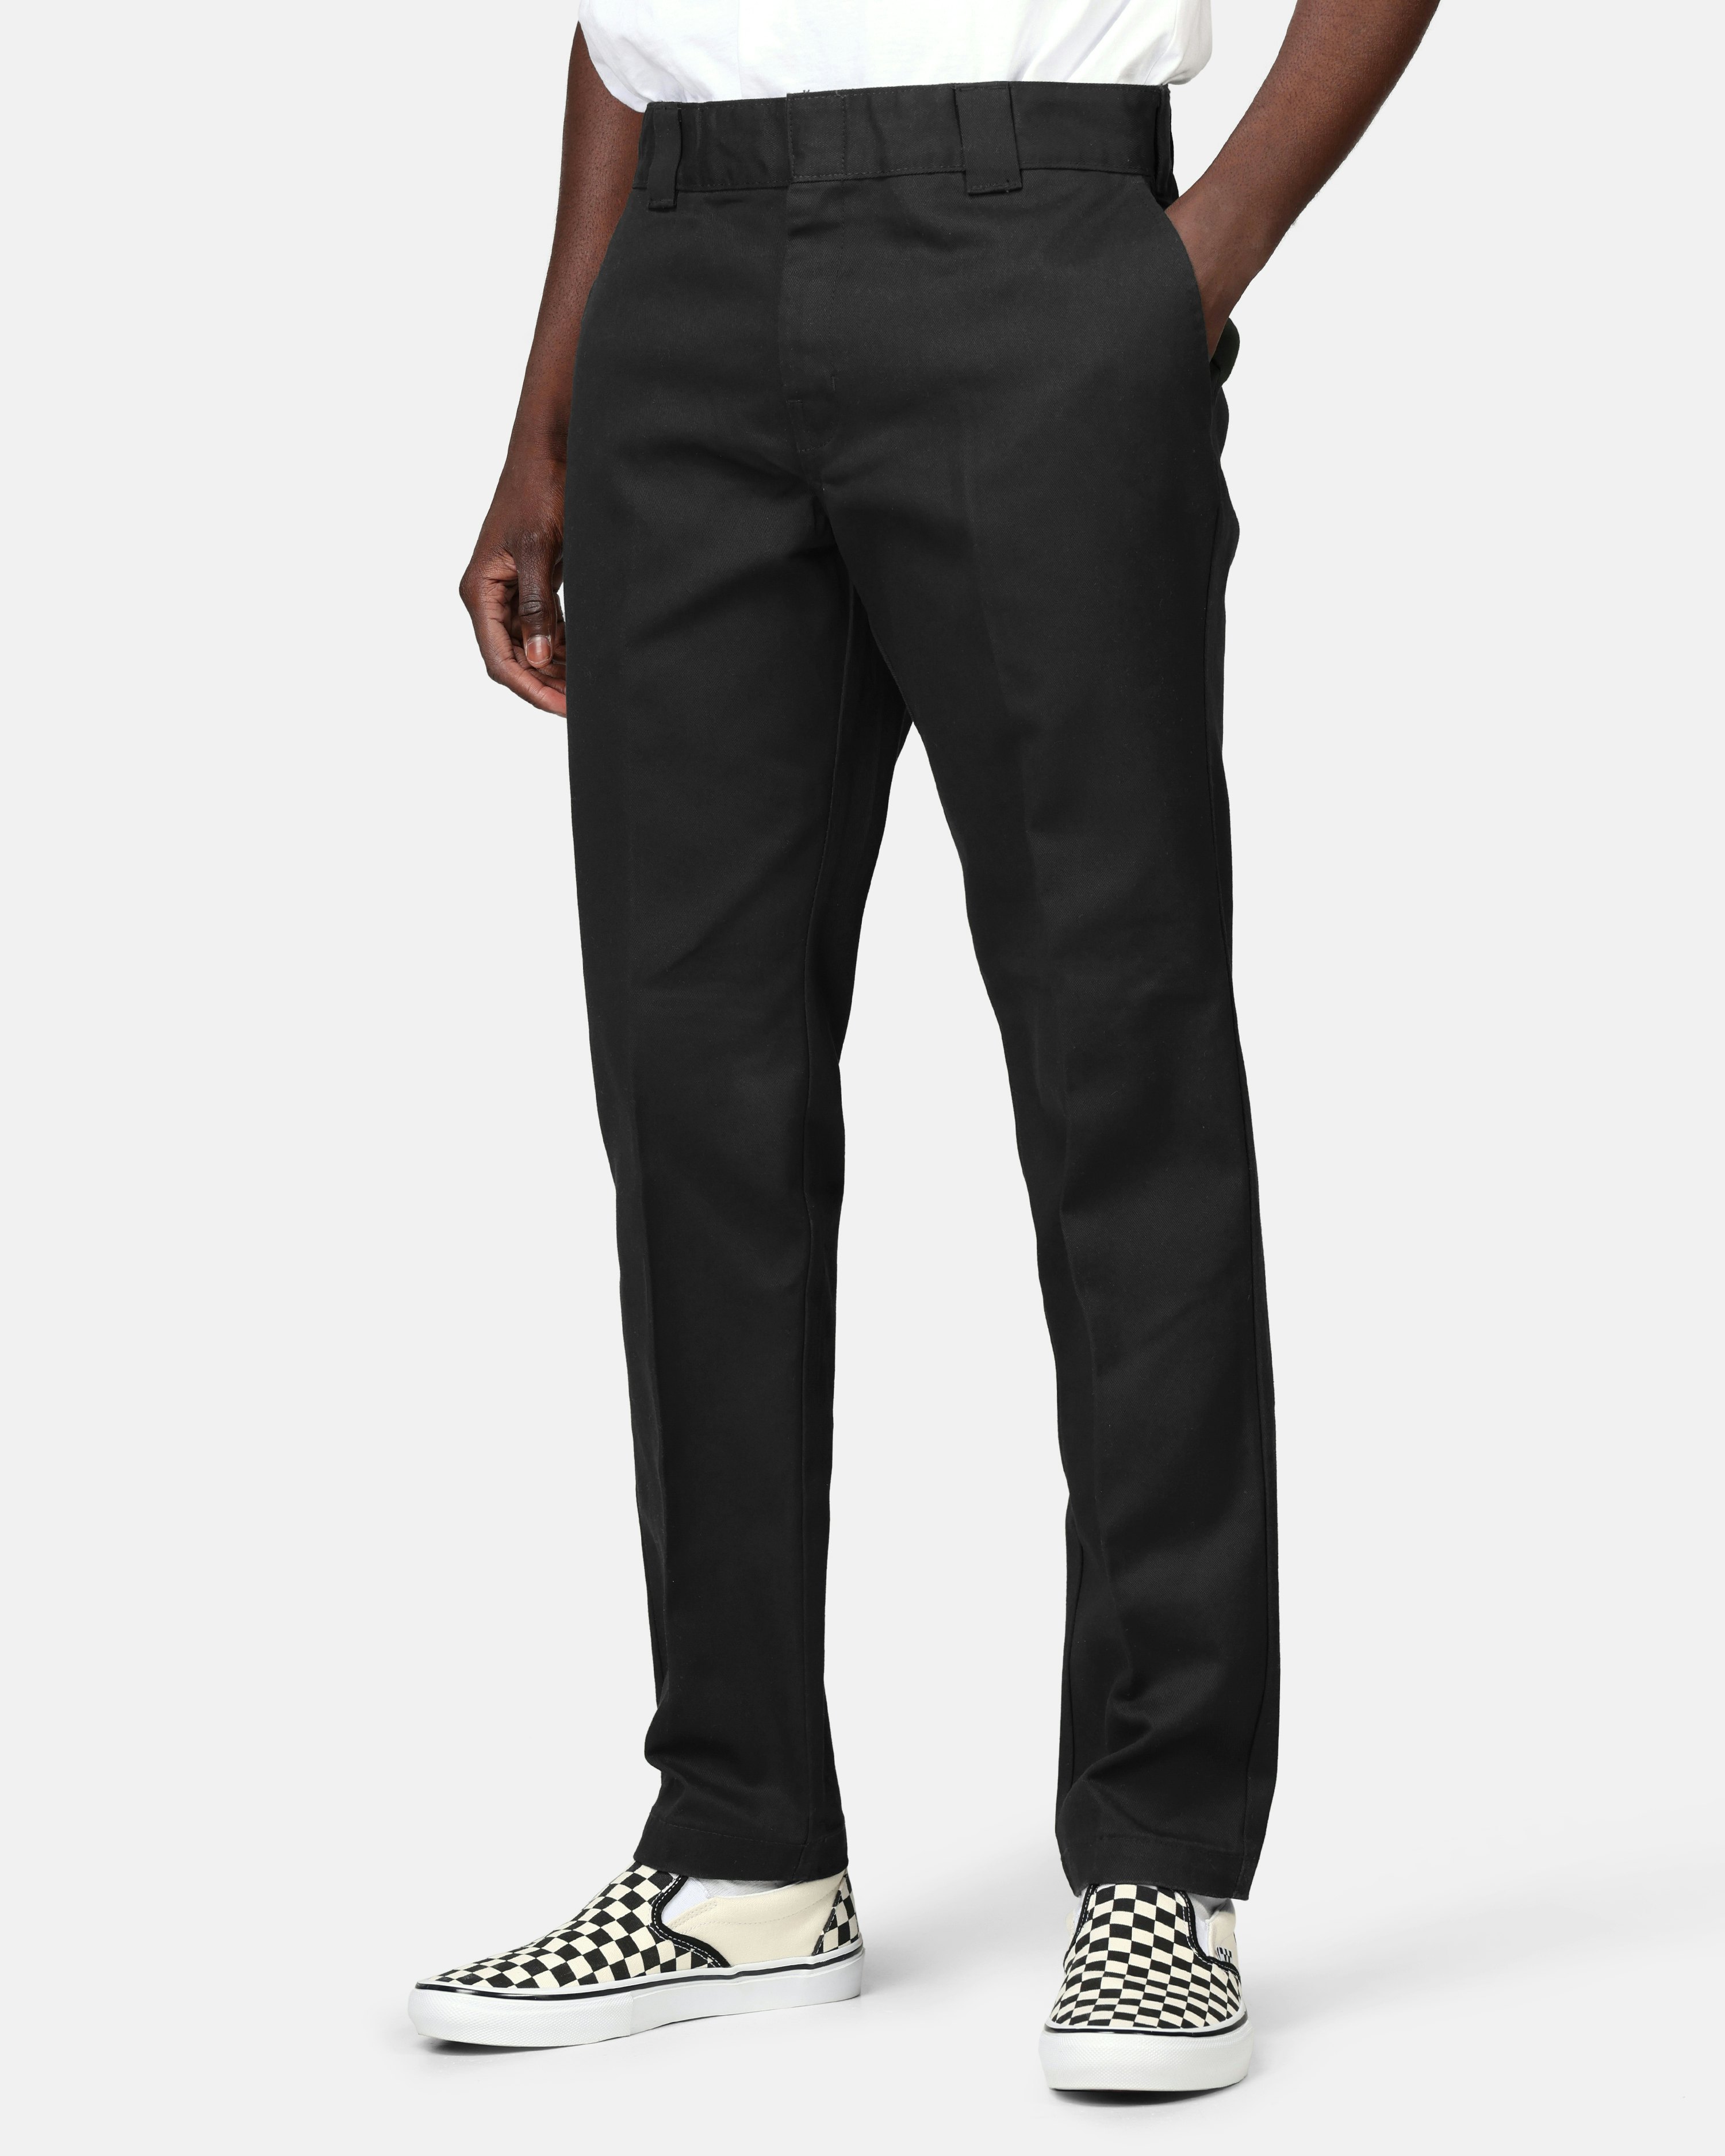 Pants - 872 Fit Work Black | Men | Junkyard.com